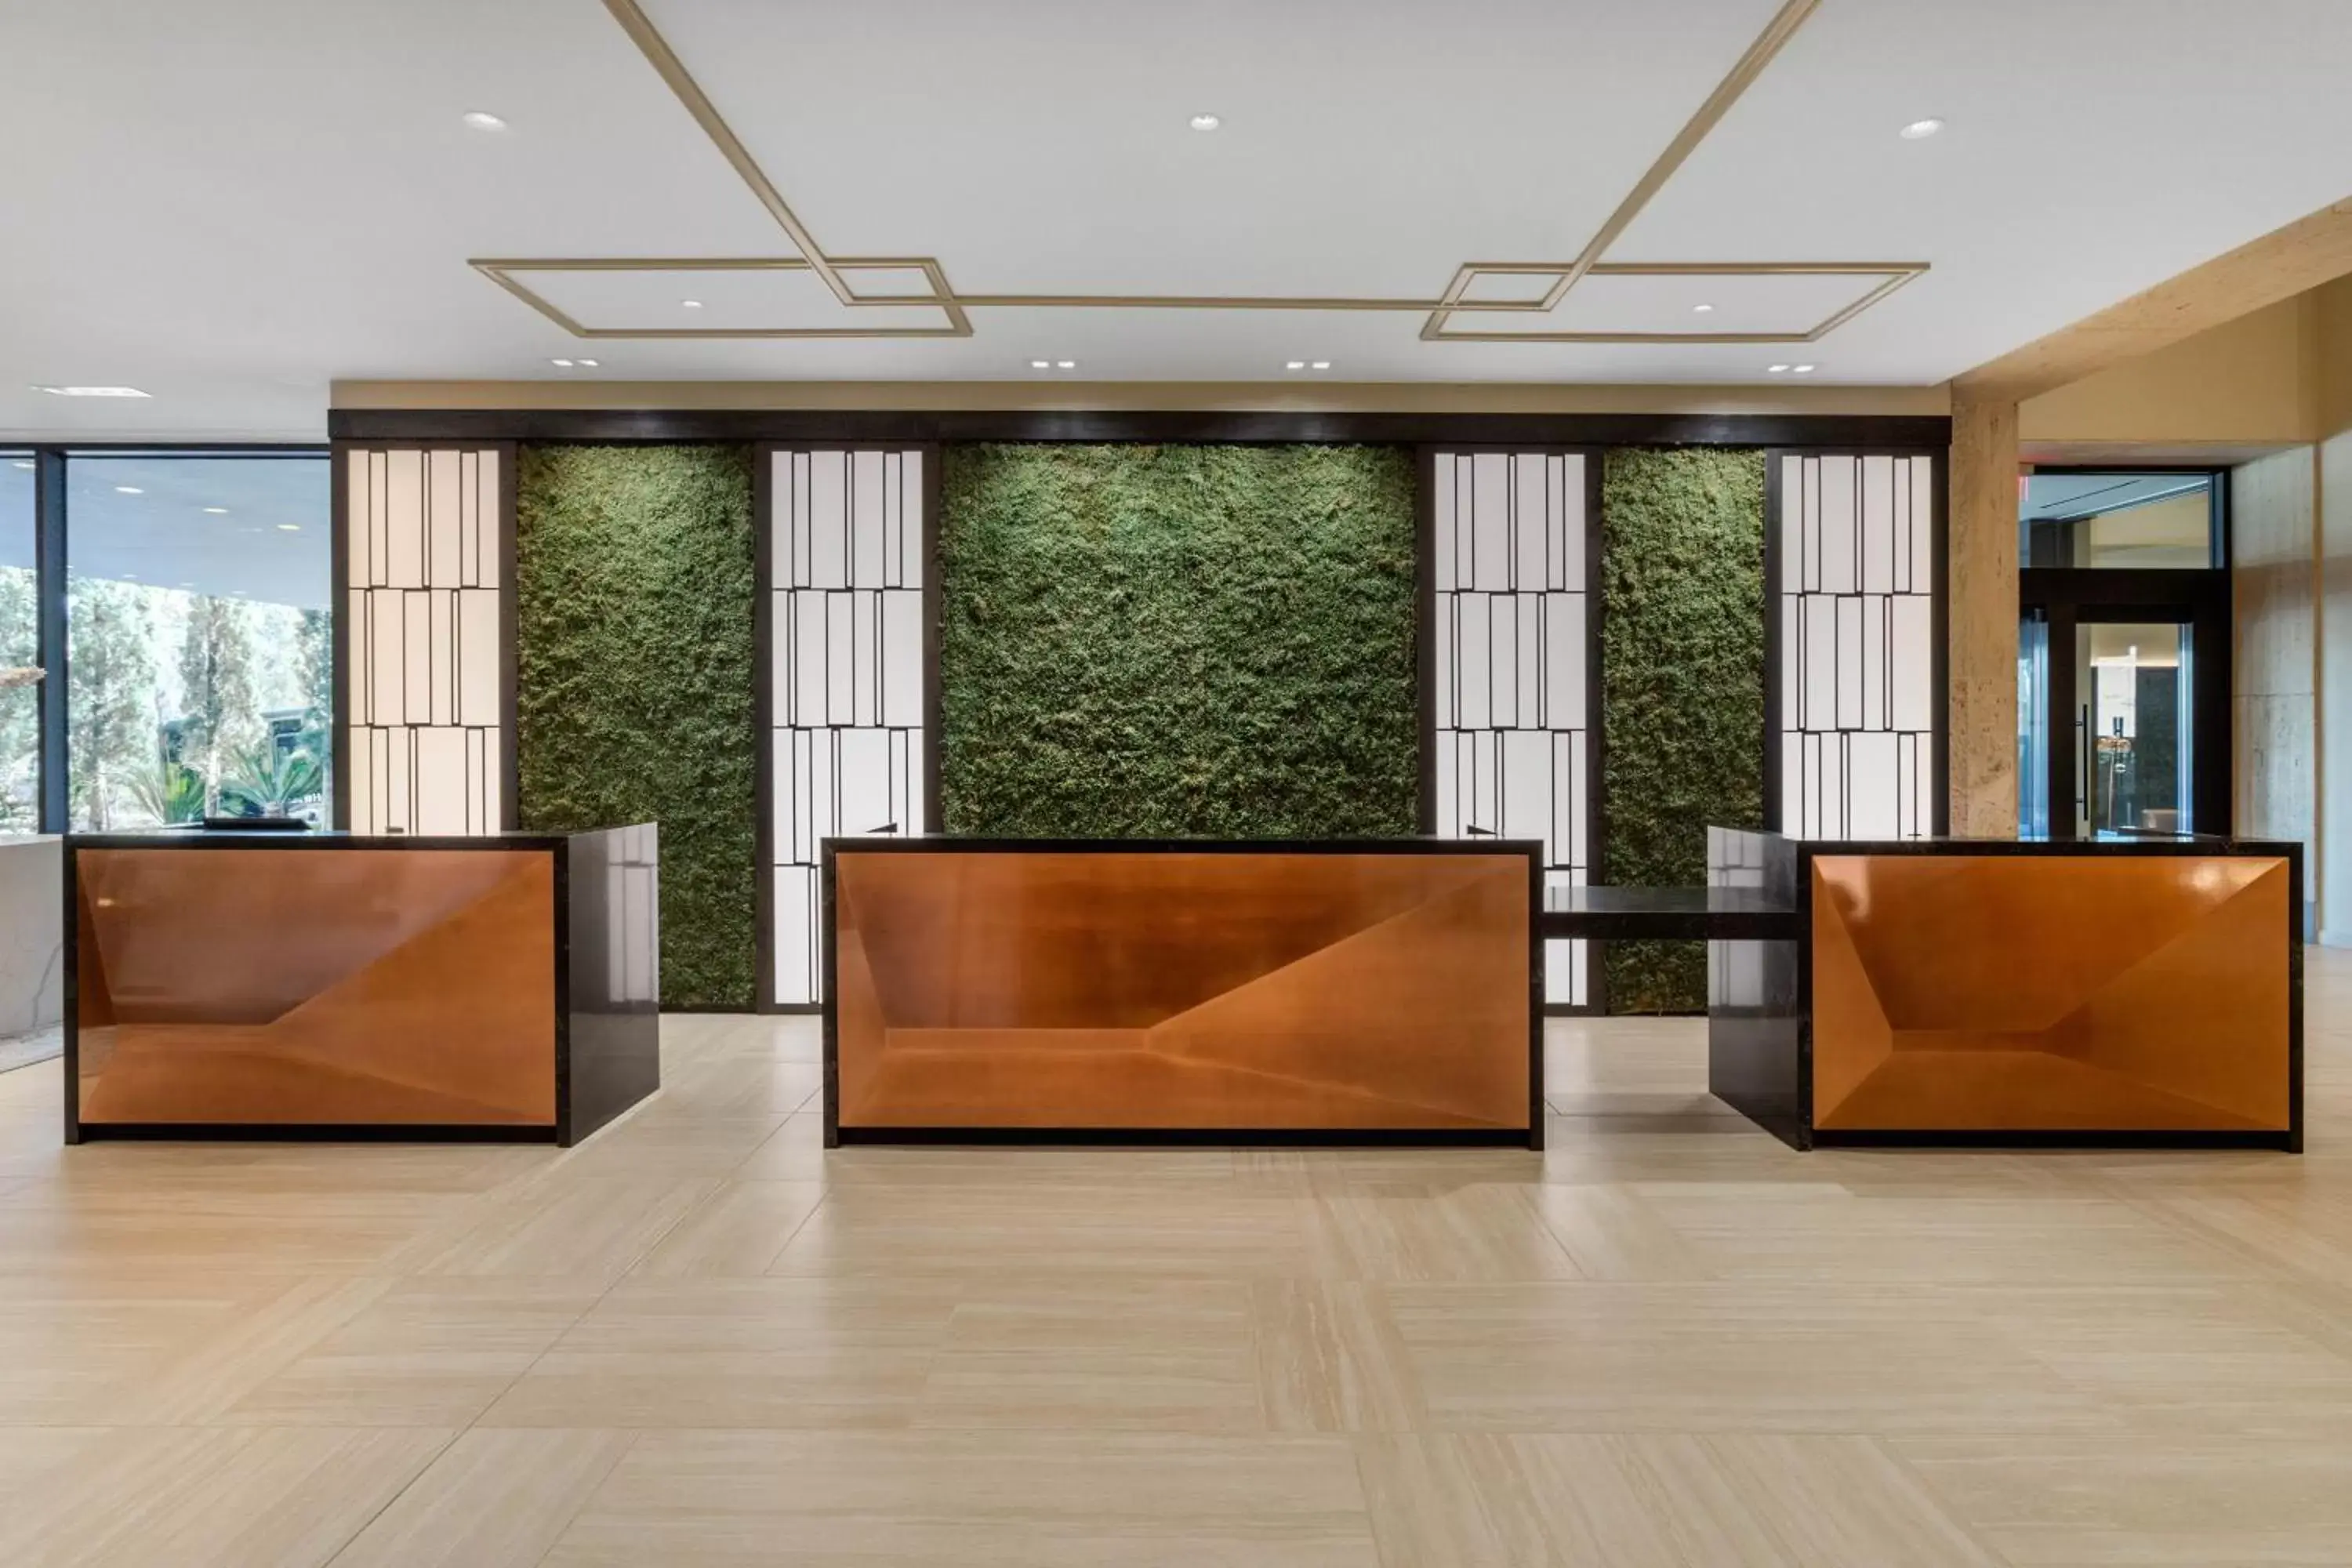 Lobby or reception, Lobby/Reception in Omni Houston Hotel